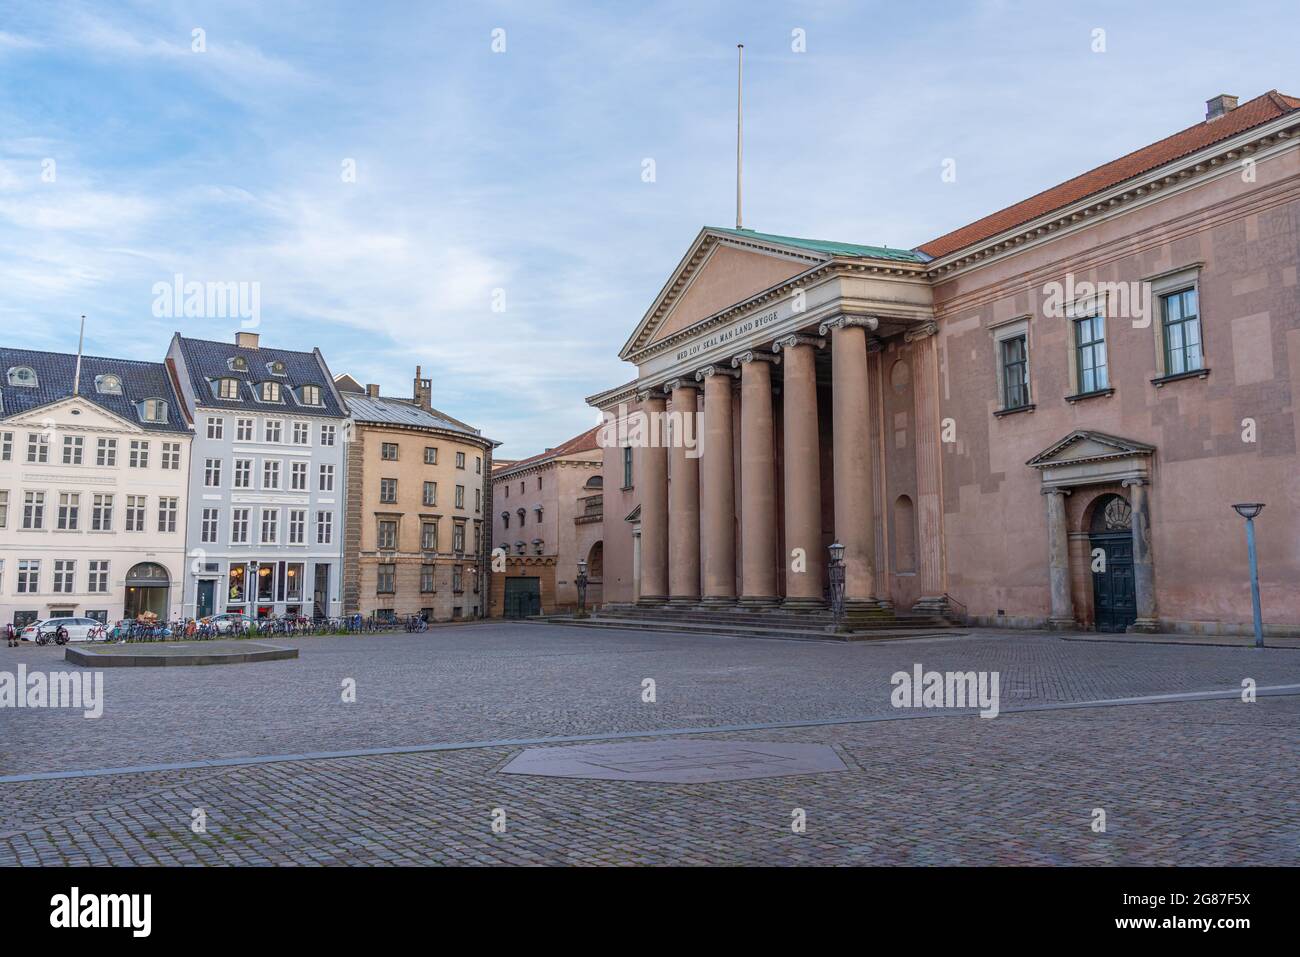 Place Nytorv et palais de justice de Copenhague - Copenhague, Danemark Banque D'Images